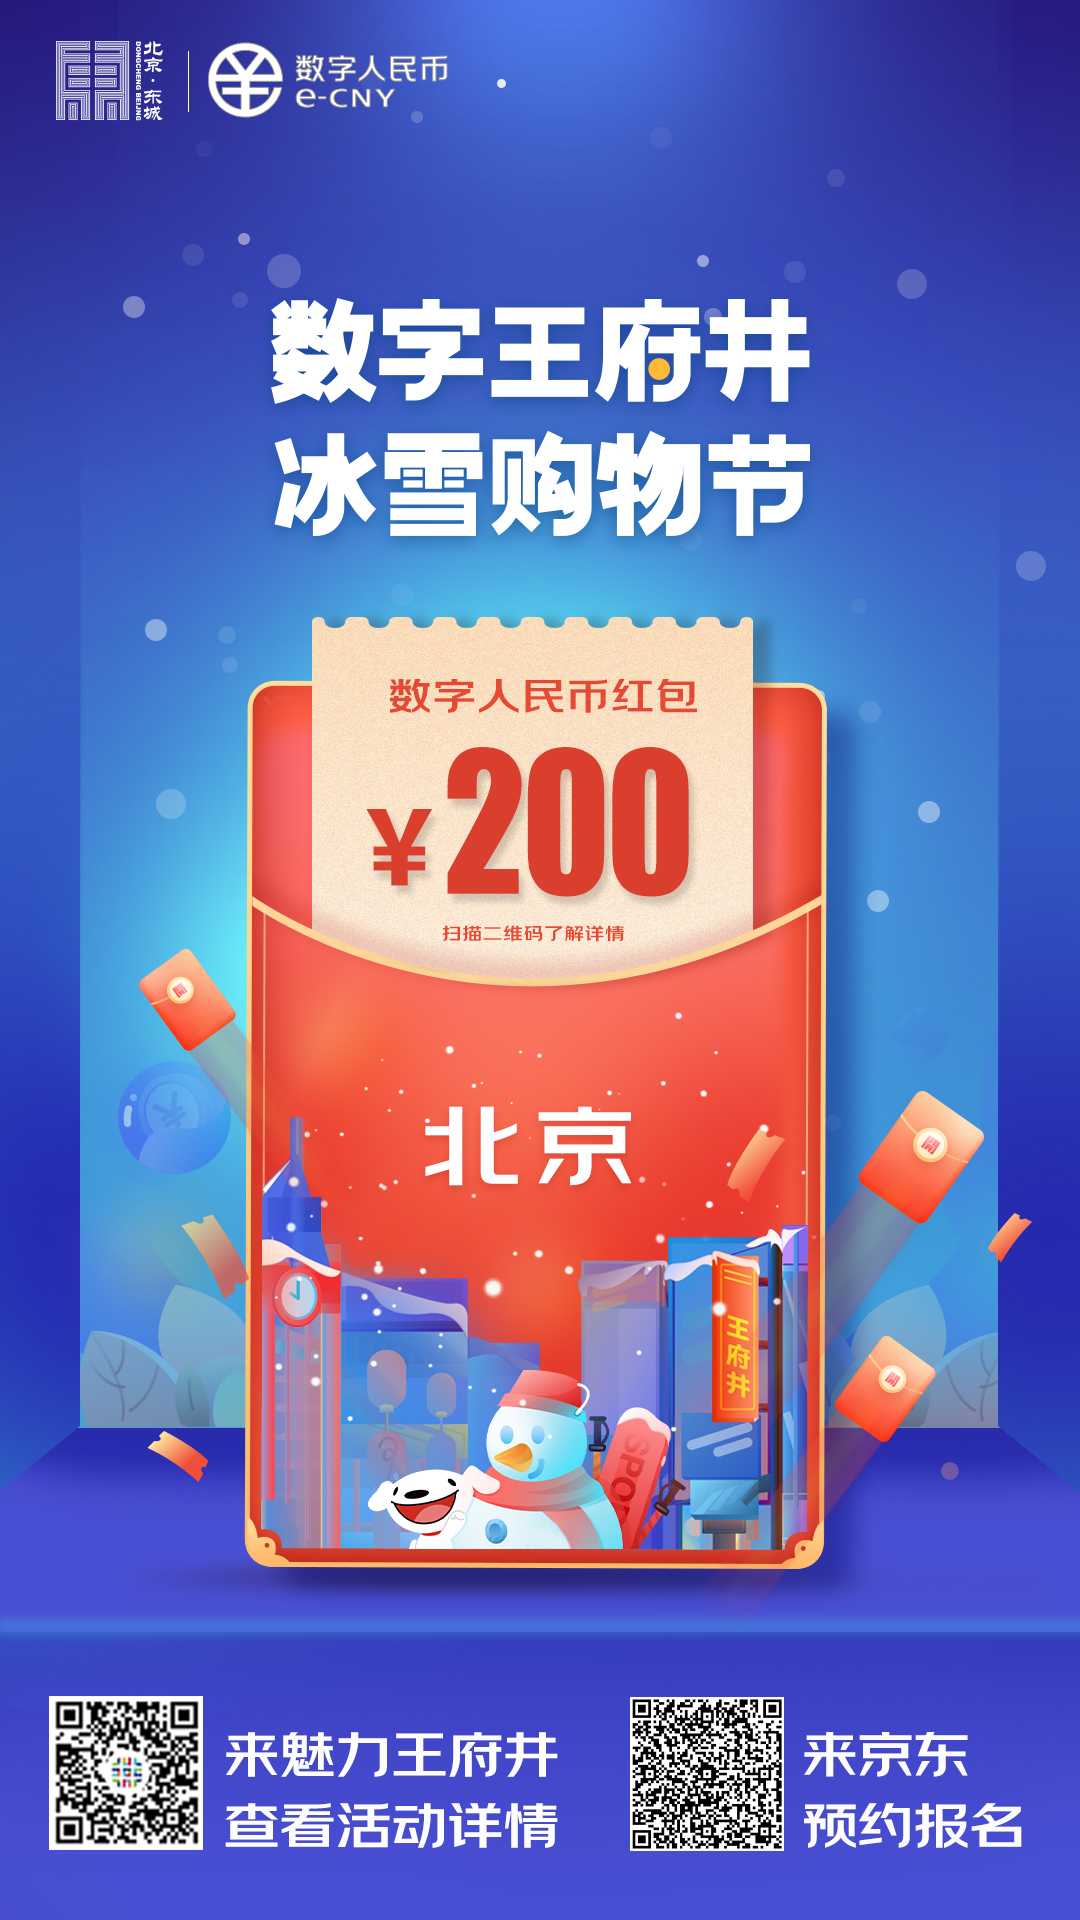 北京成数字人民币红包试点第三城 将围绕冬奥会推进更多应用